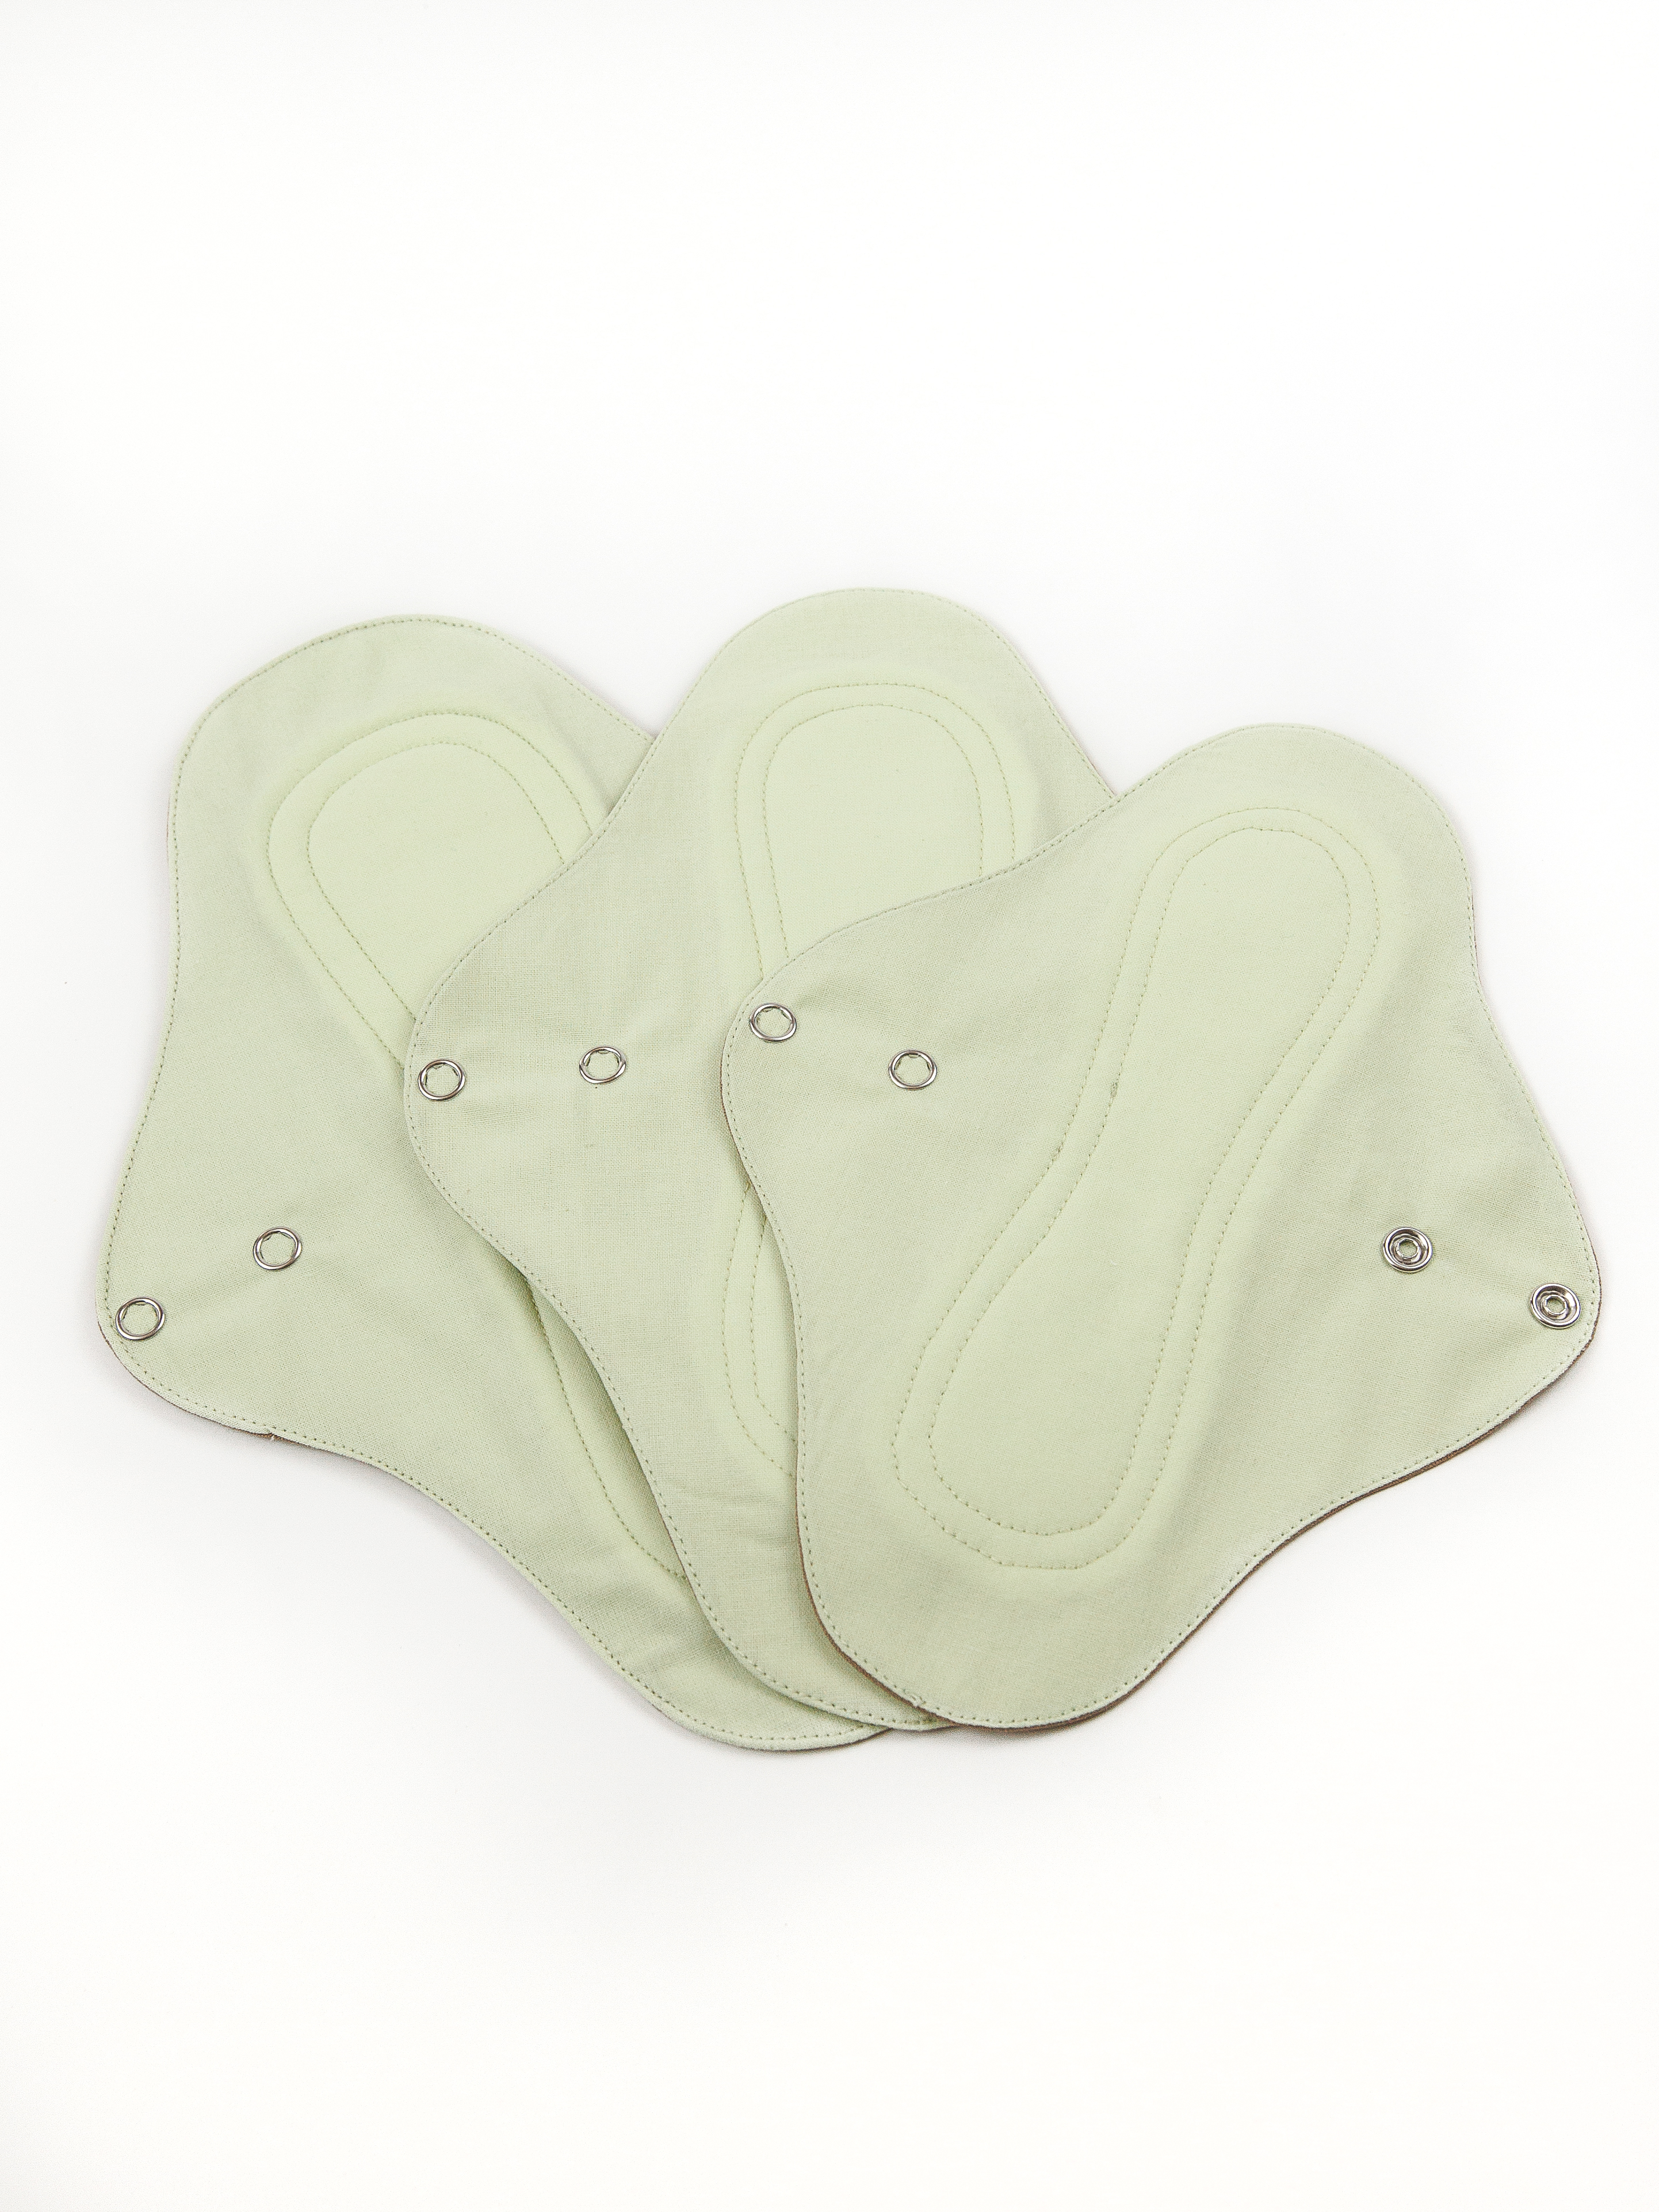 Прокладки Cycle Recycle для менструации многоразовые зеленый цвет 3 шт многоразовые прокладки mum s era f36996 хлопок комплект 3 шт